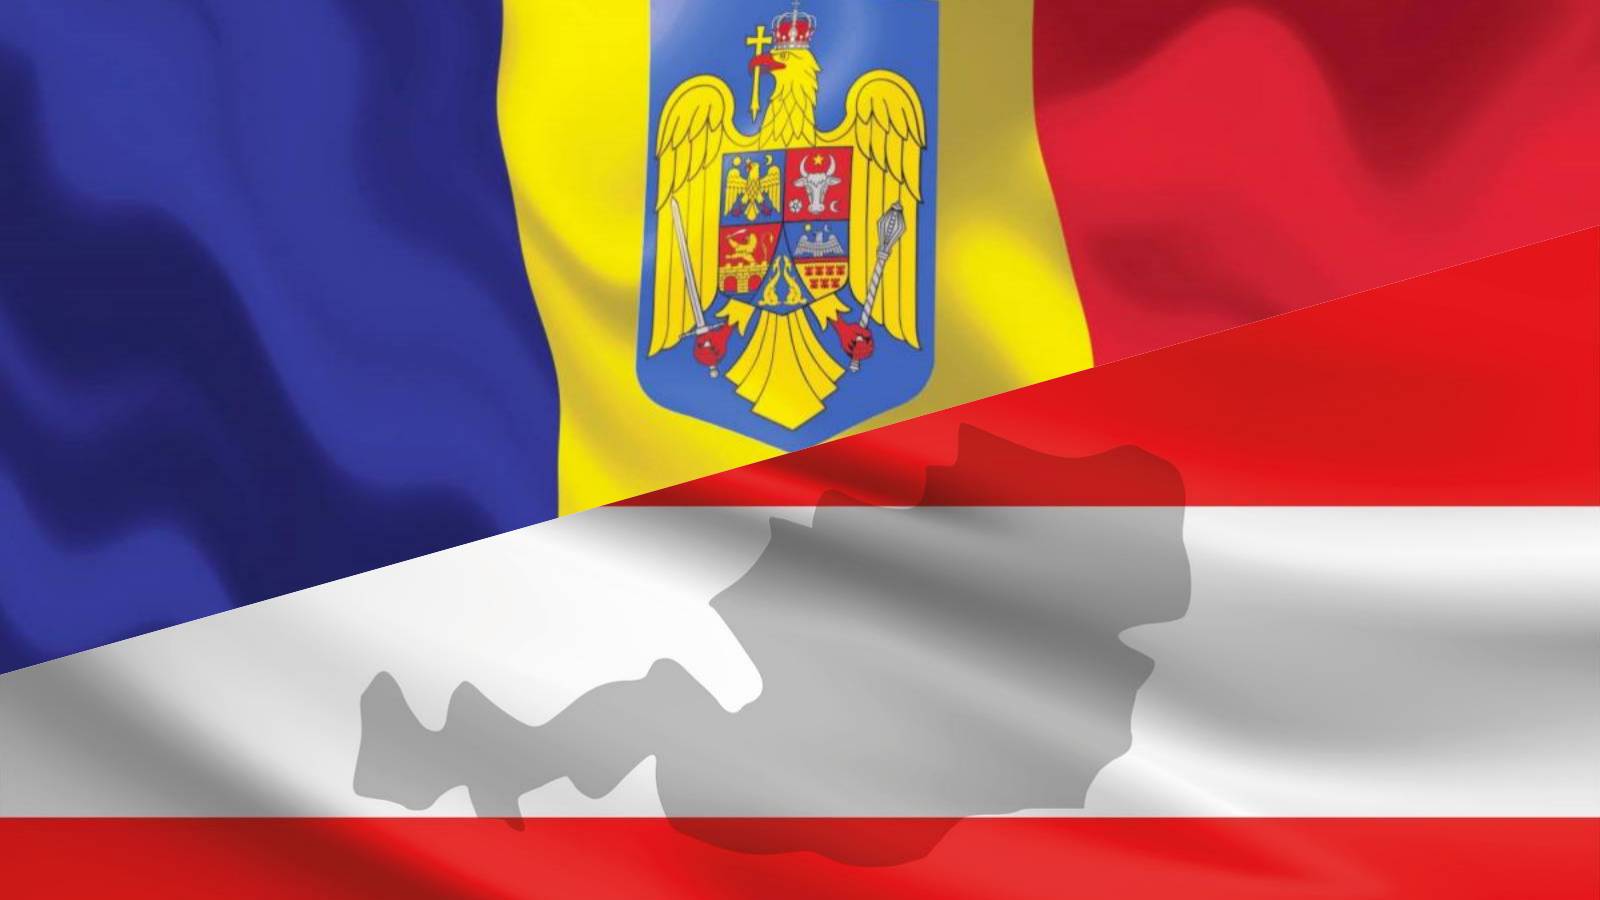 Austria NACIŚNIONA Kontynuuj WAŻNE Ogłoszenia Przystąpienie Rumunii do Schengen